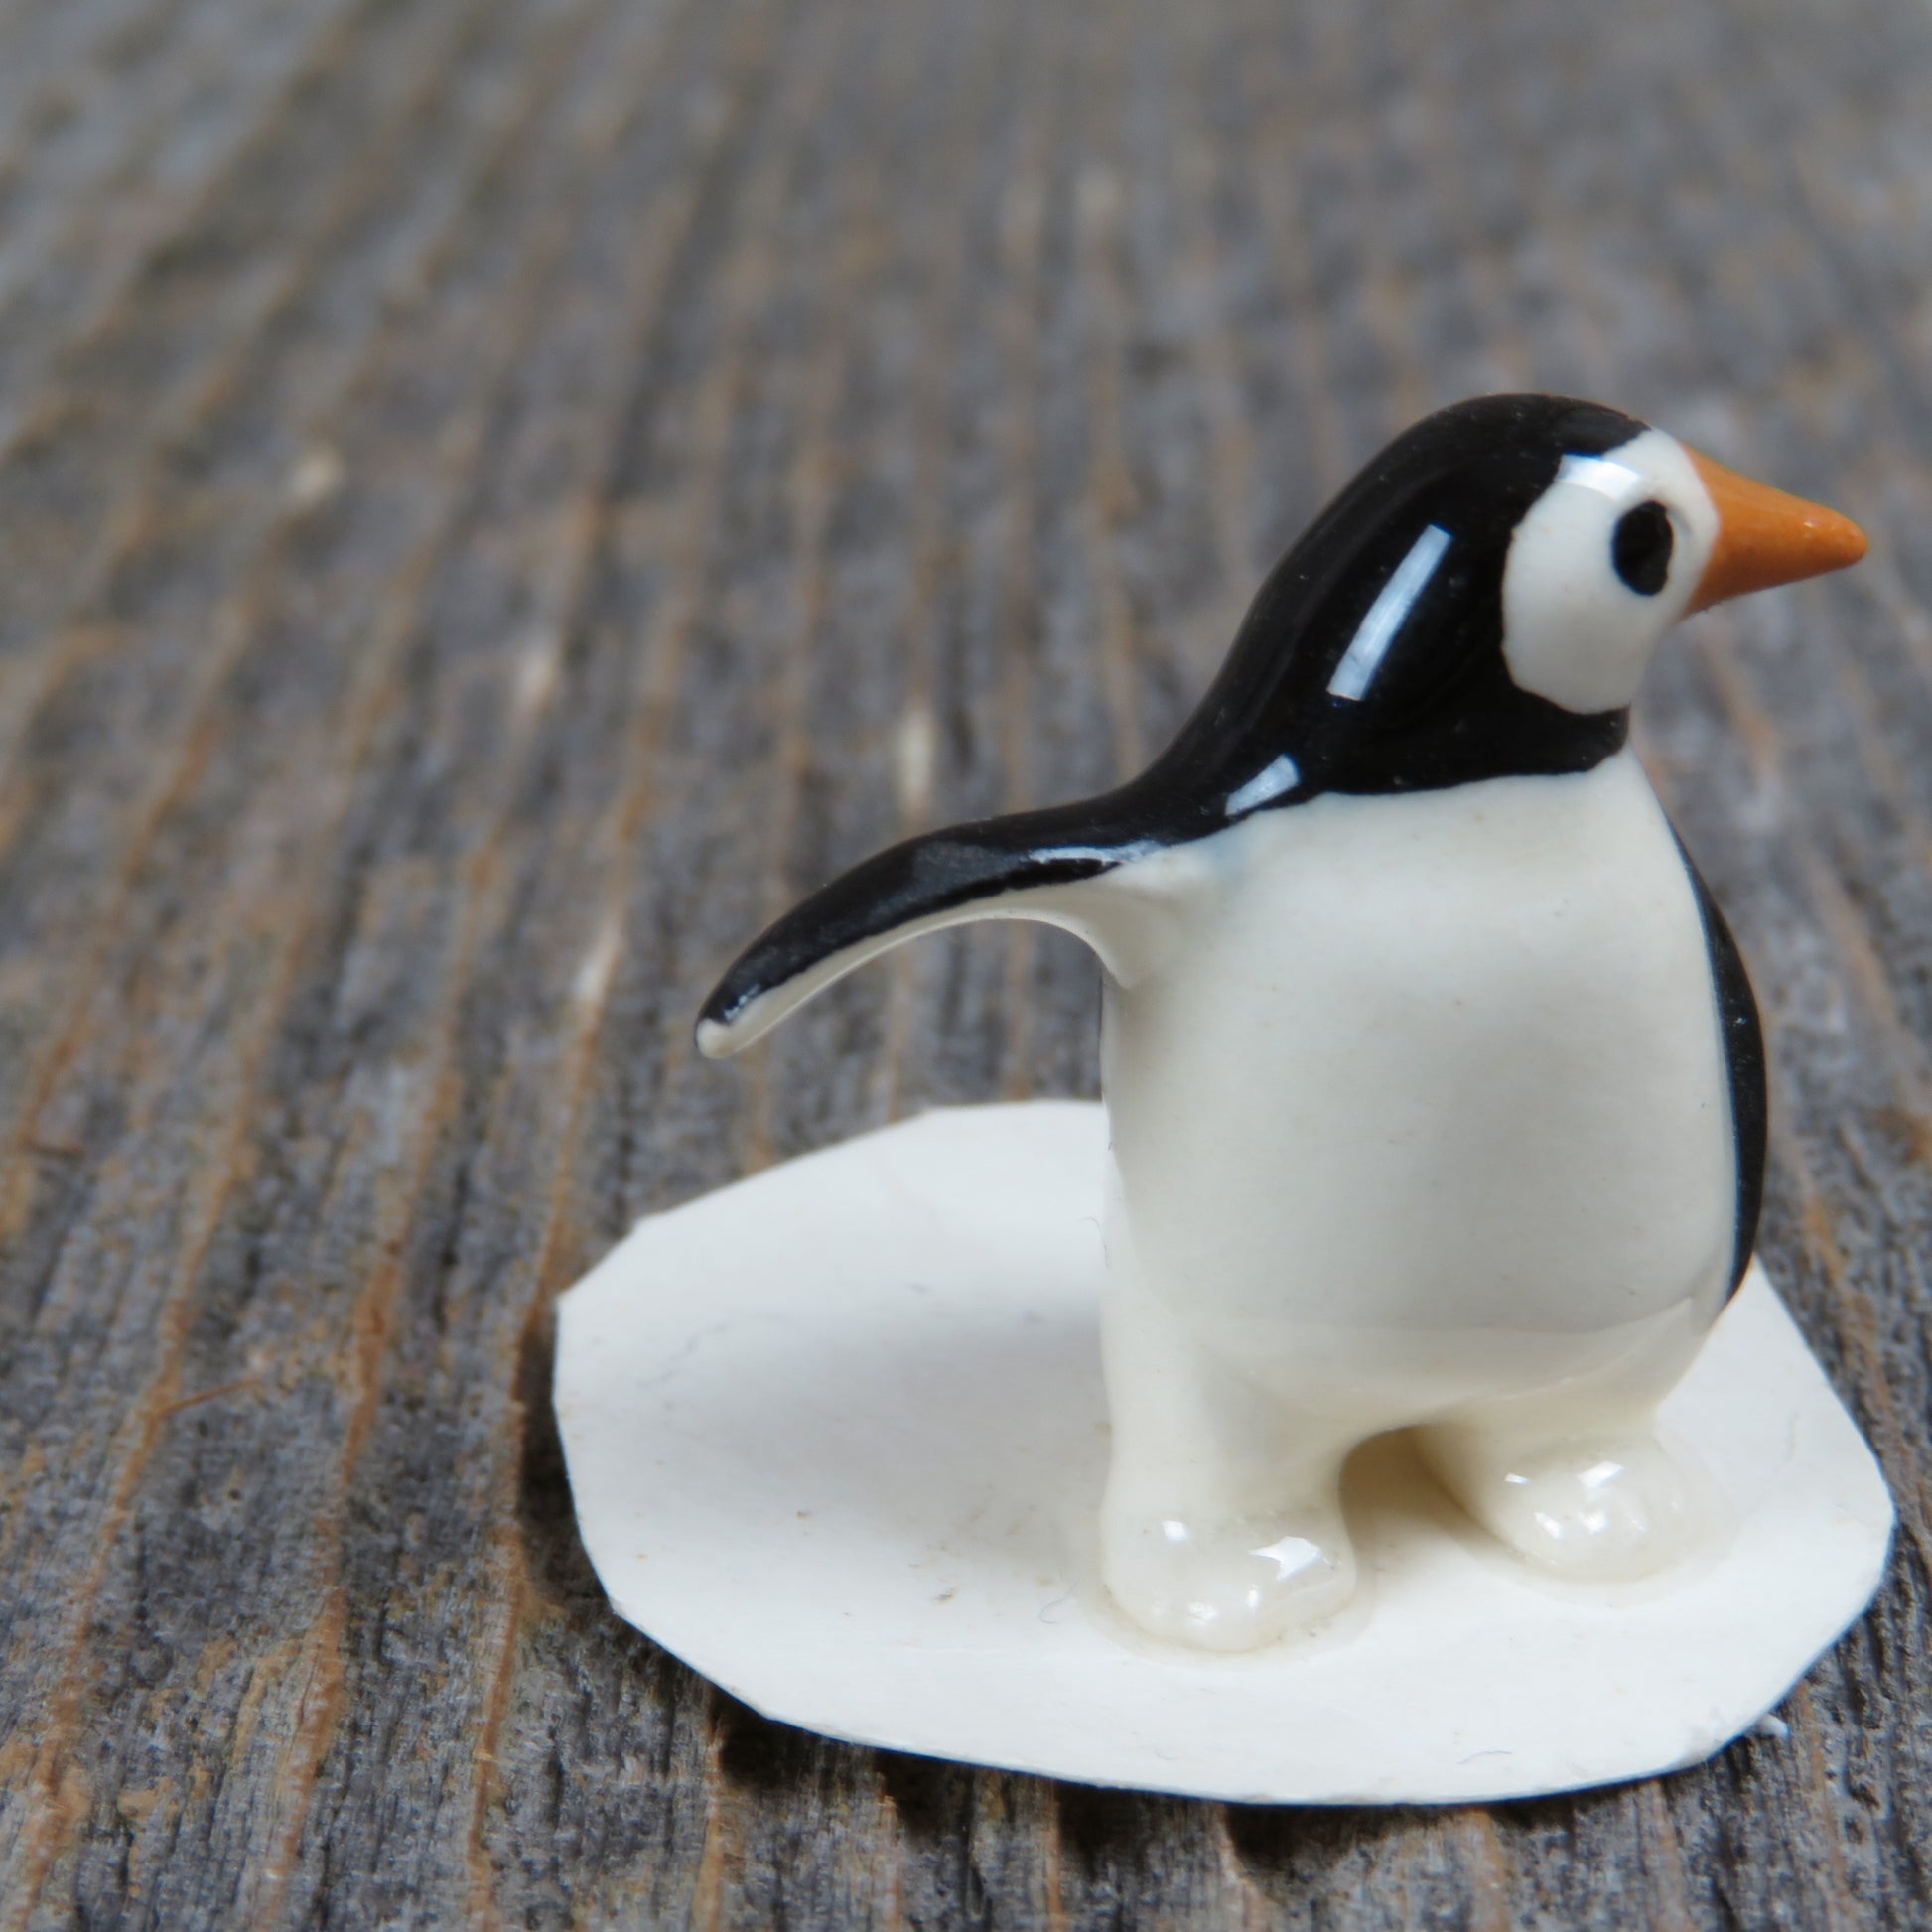 Penguin On Skis - miniature porcelain figurine